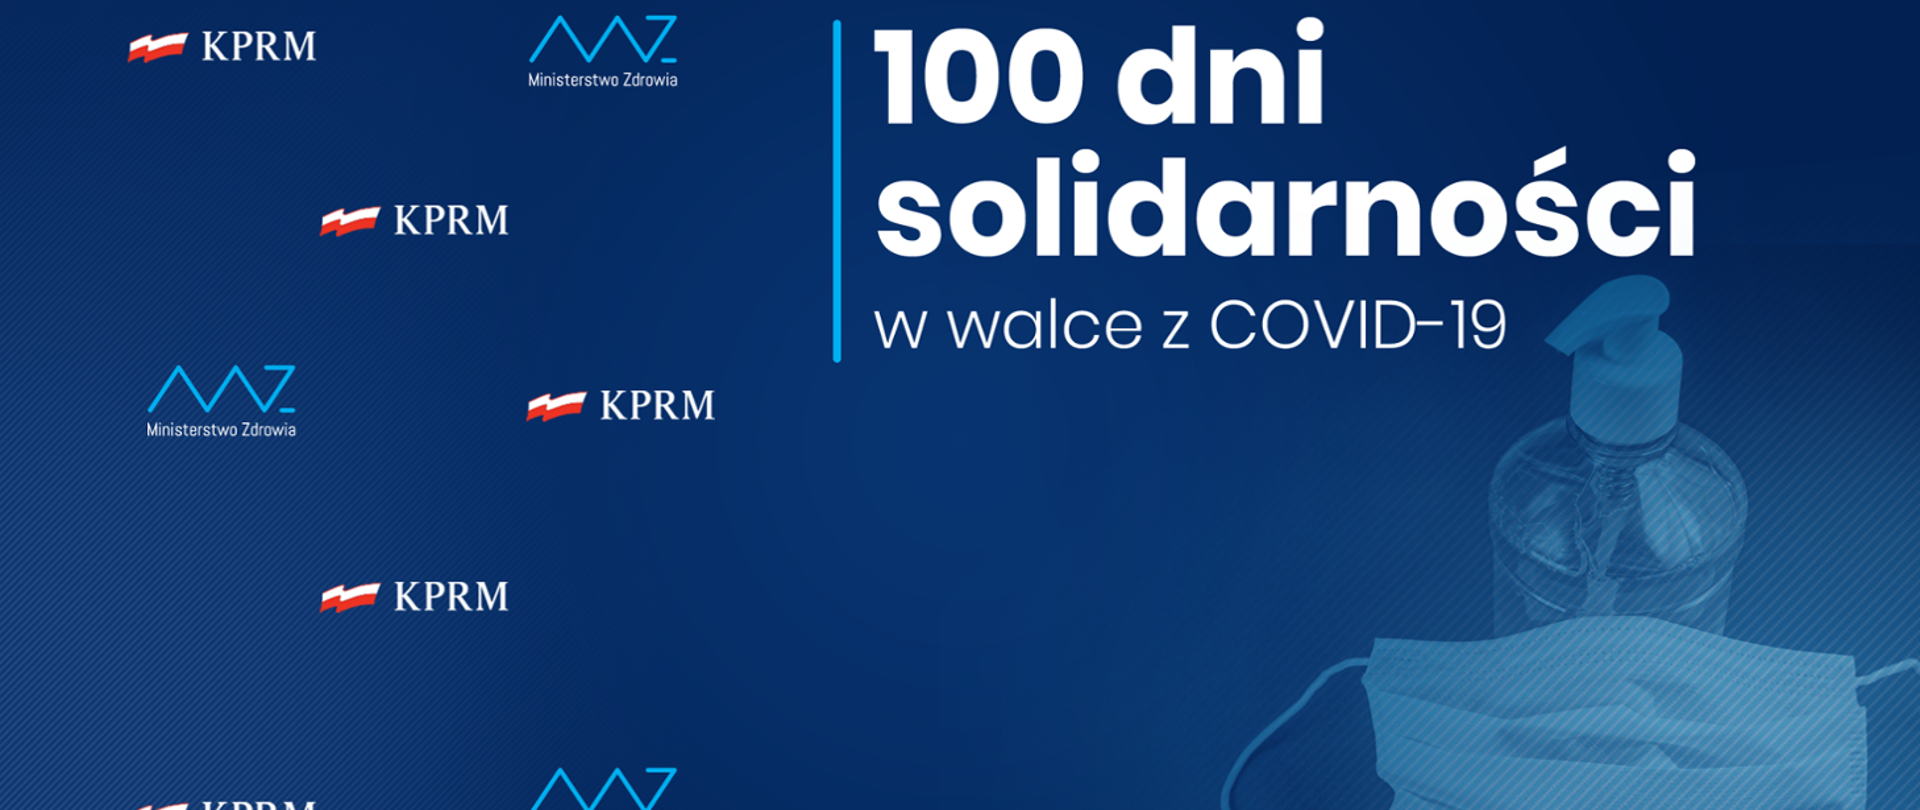 grafika 100 dni solidarności w walce z COVID-19